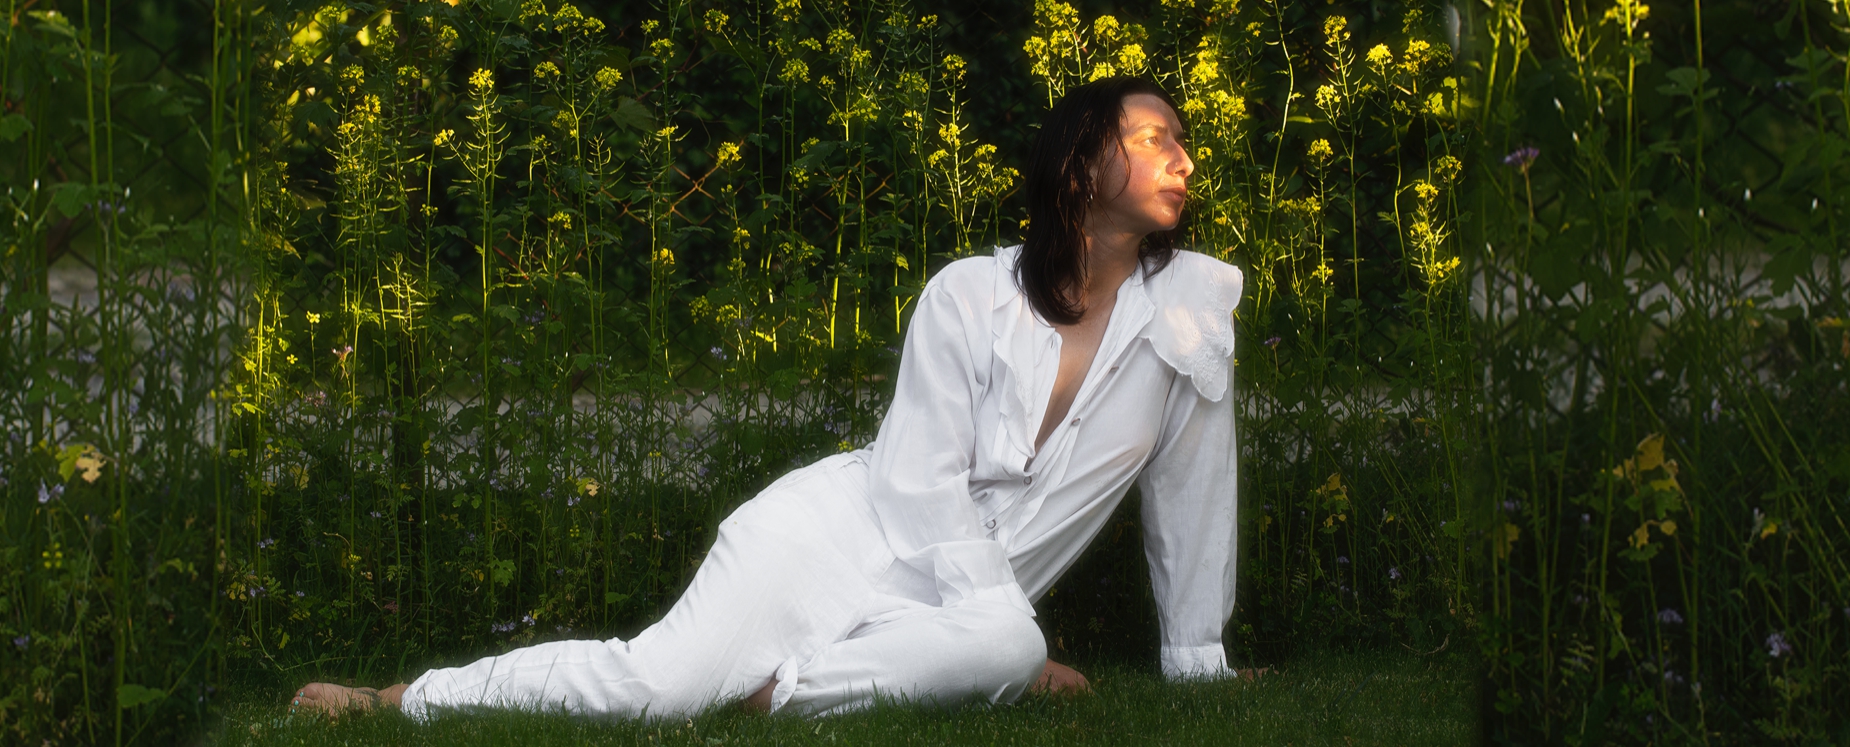 Na zdjęciu Antonina Nowacka. Zdjęcie osoba w białym ubiorze siedzi na trawie w tle zieleń drzew i krzewów.